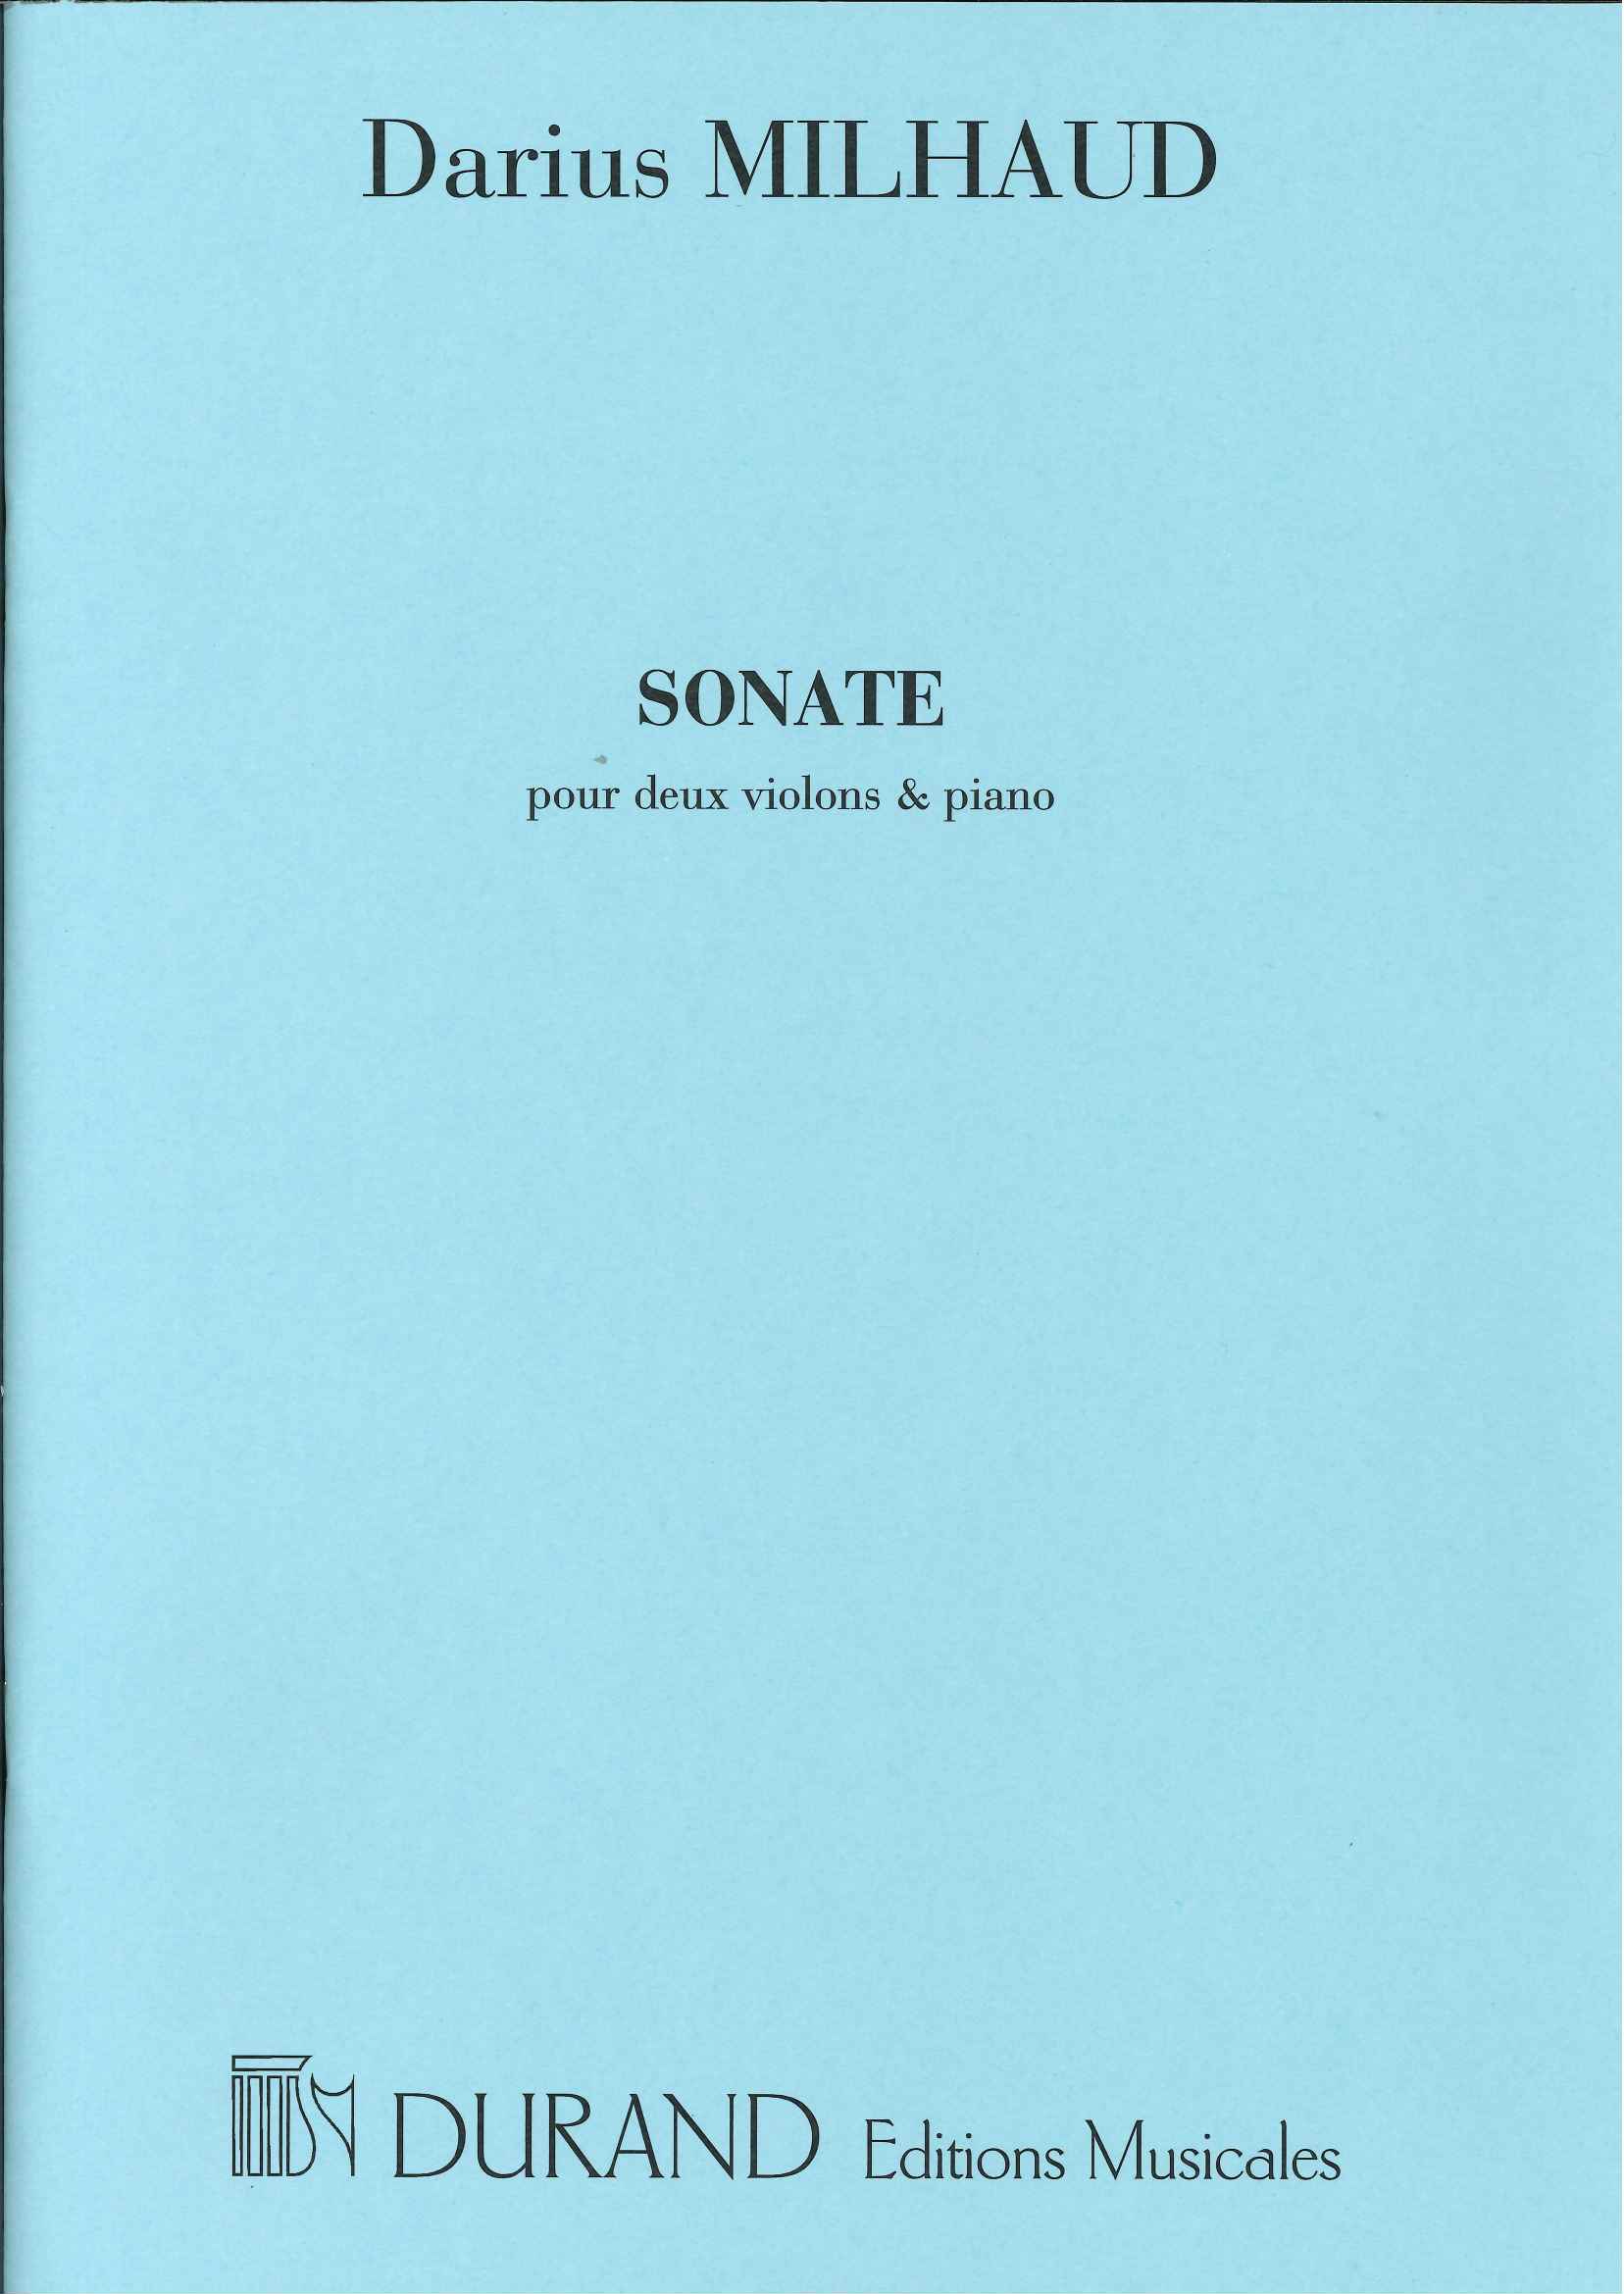 アカデミアミュージック / Sonate pour 2 violons et piano, op. 15 (1914)